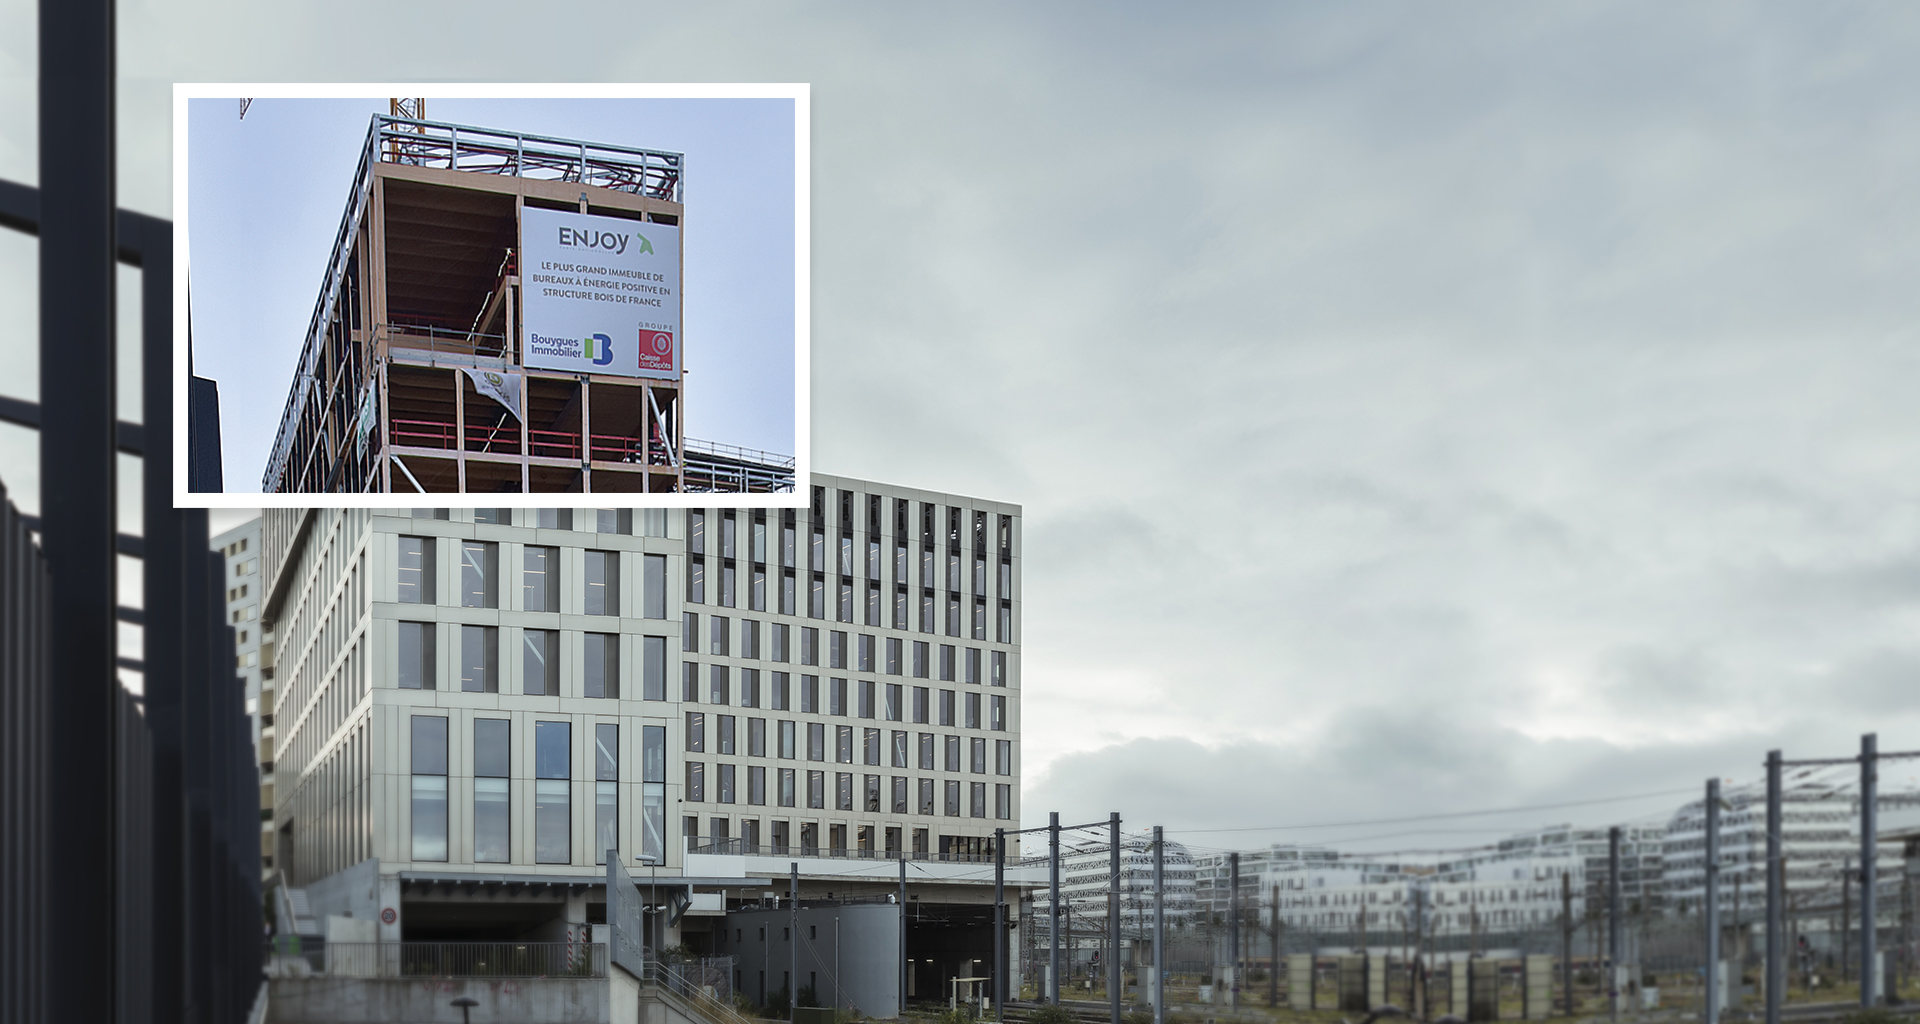 montage montrant une des façades de l'immeuble de bureaux Enjoy avec en focus la construction du bâtiment fin 2017 pour montrer l'ossature bois et le bâtiment actuel 